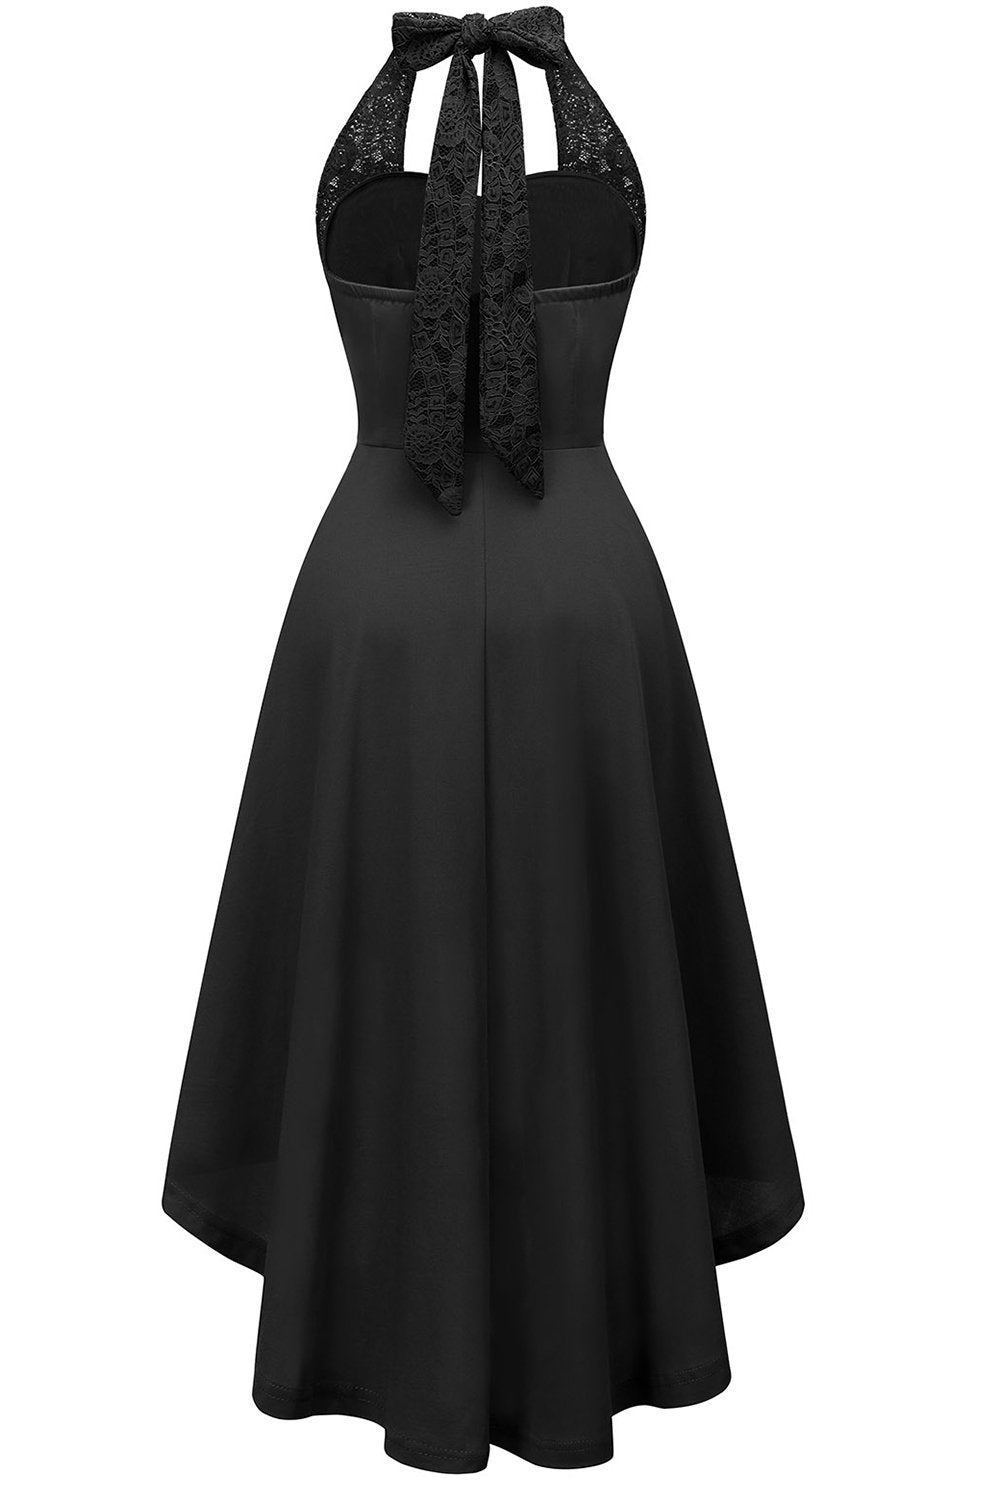 High Low Halter Black Vintage Dress